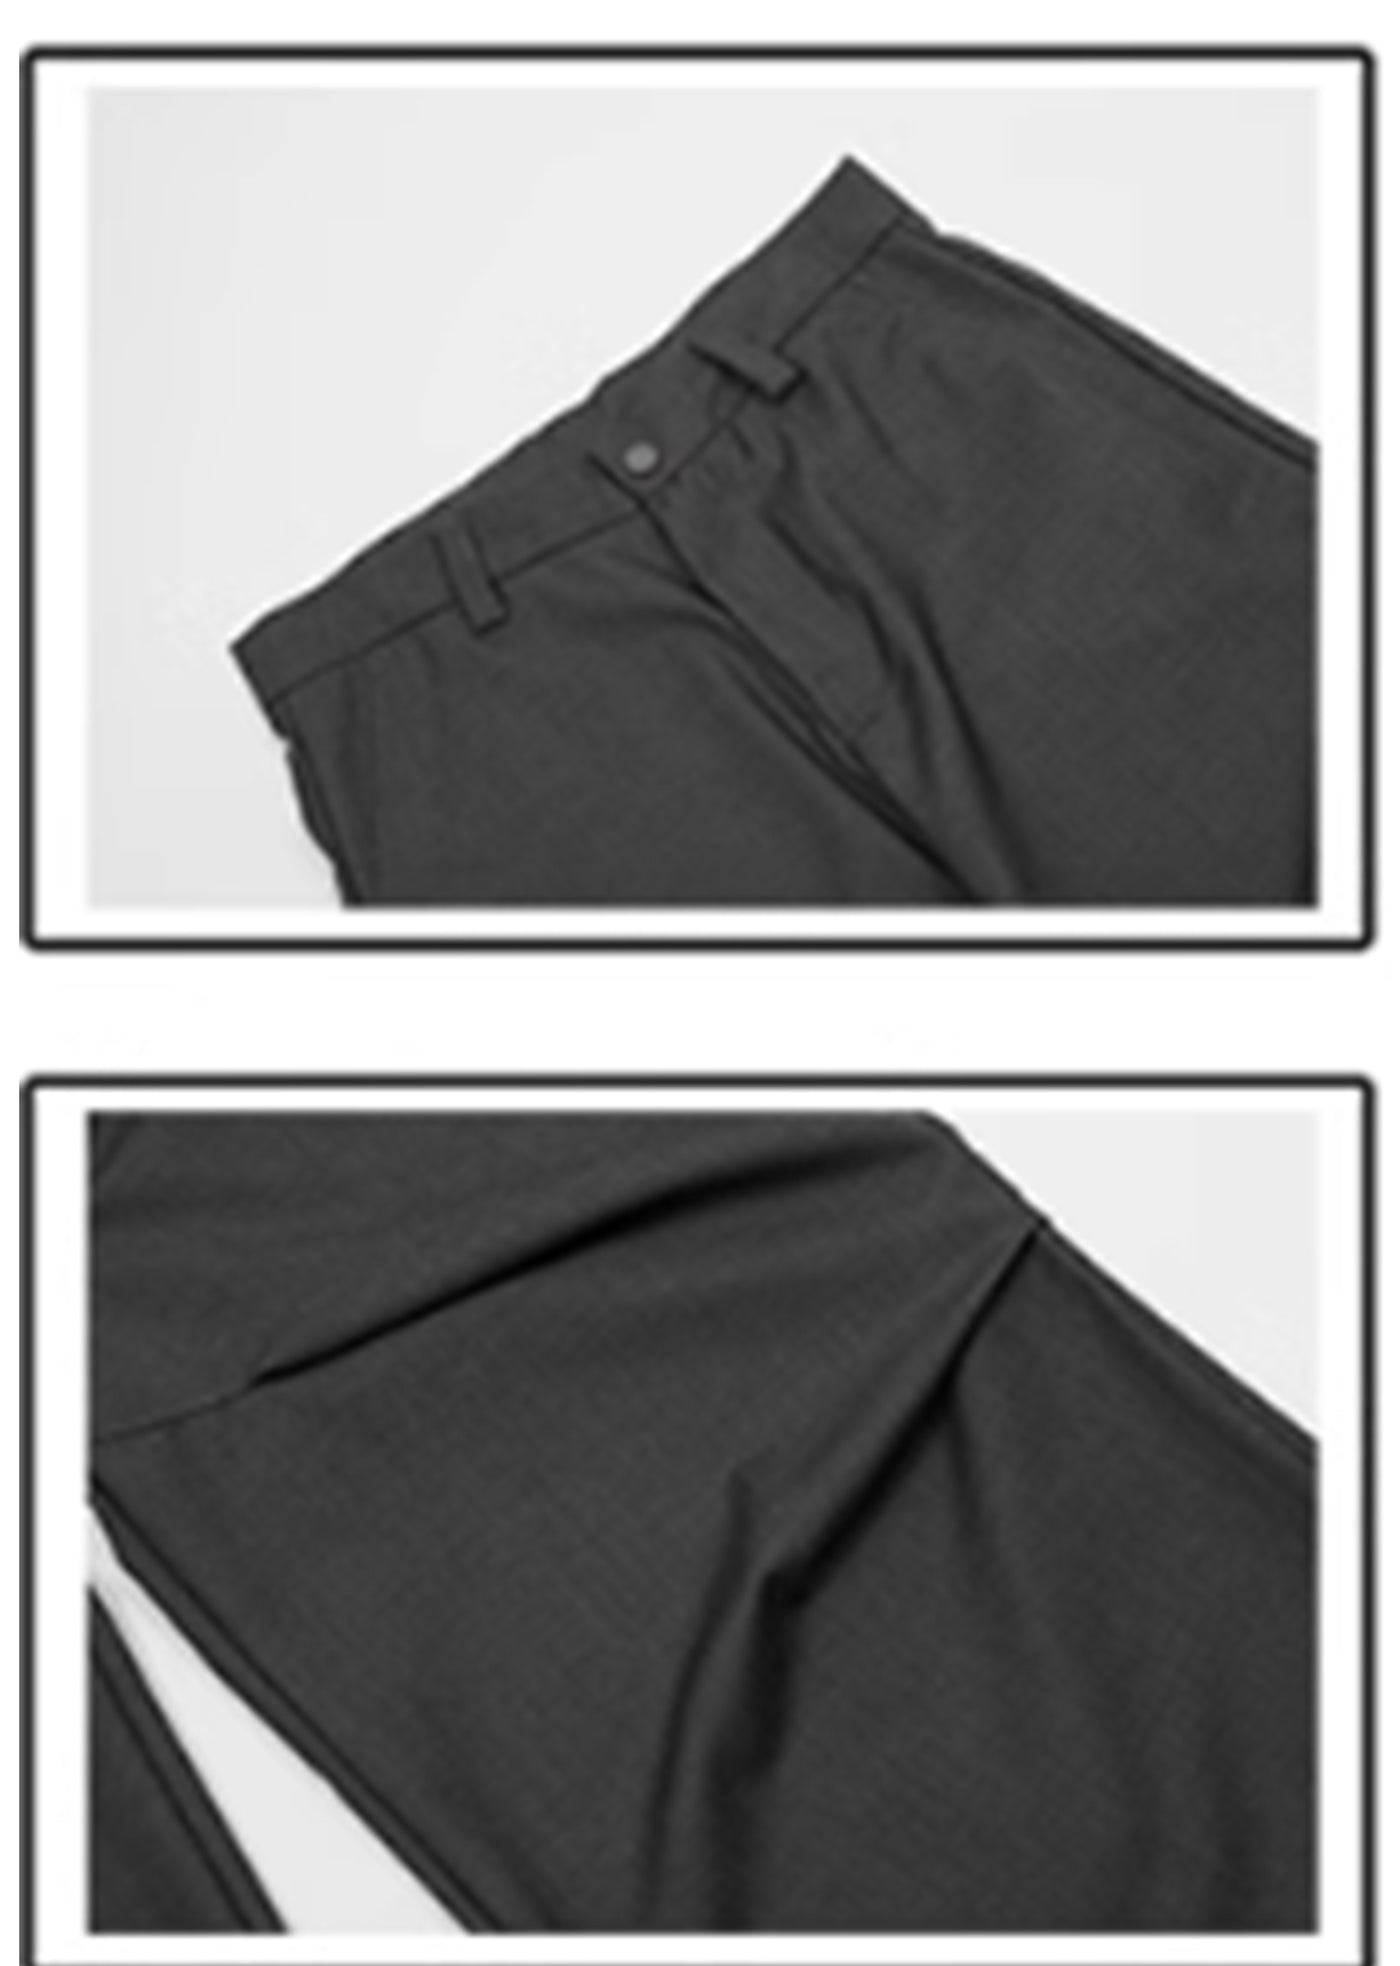 [76street] Overall tuck-in bell road silhouette slacks pants ST0014